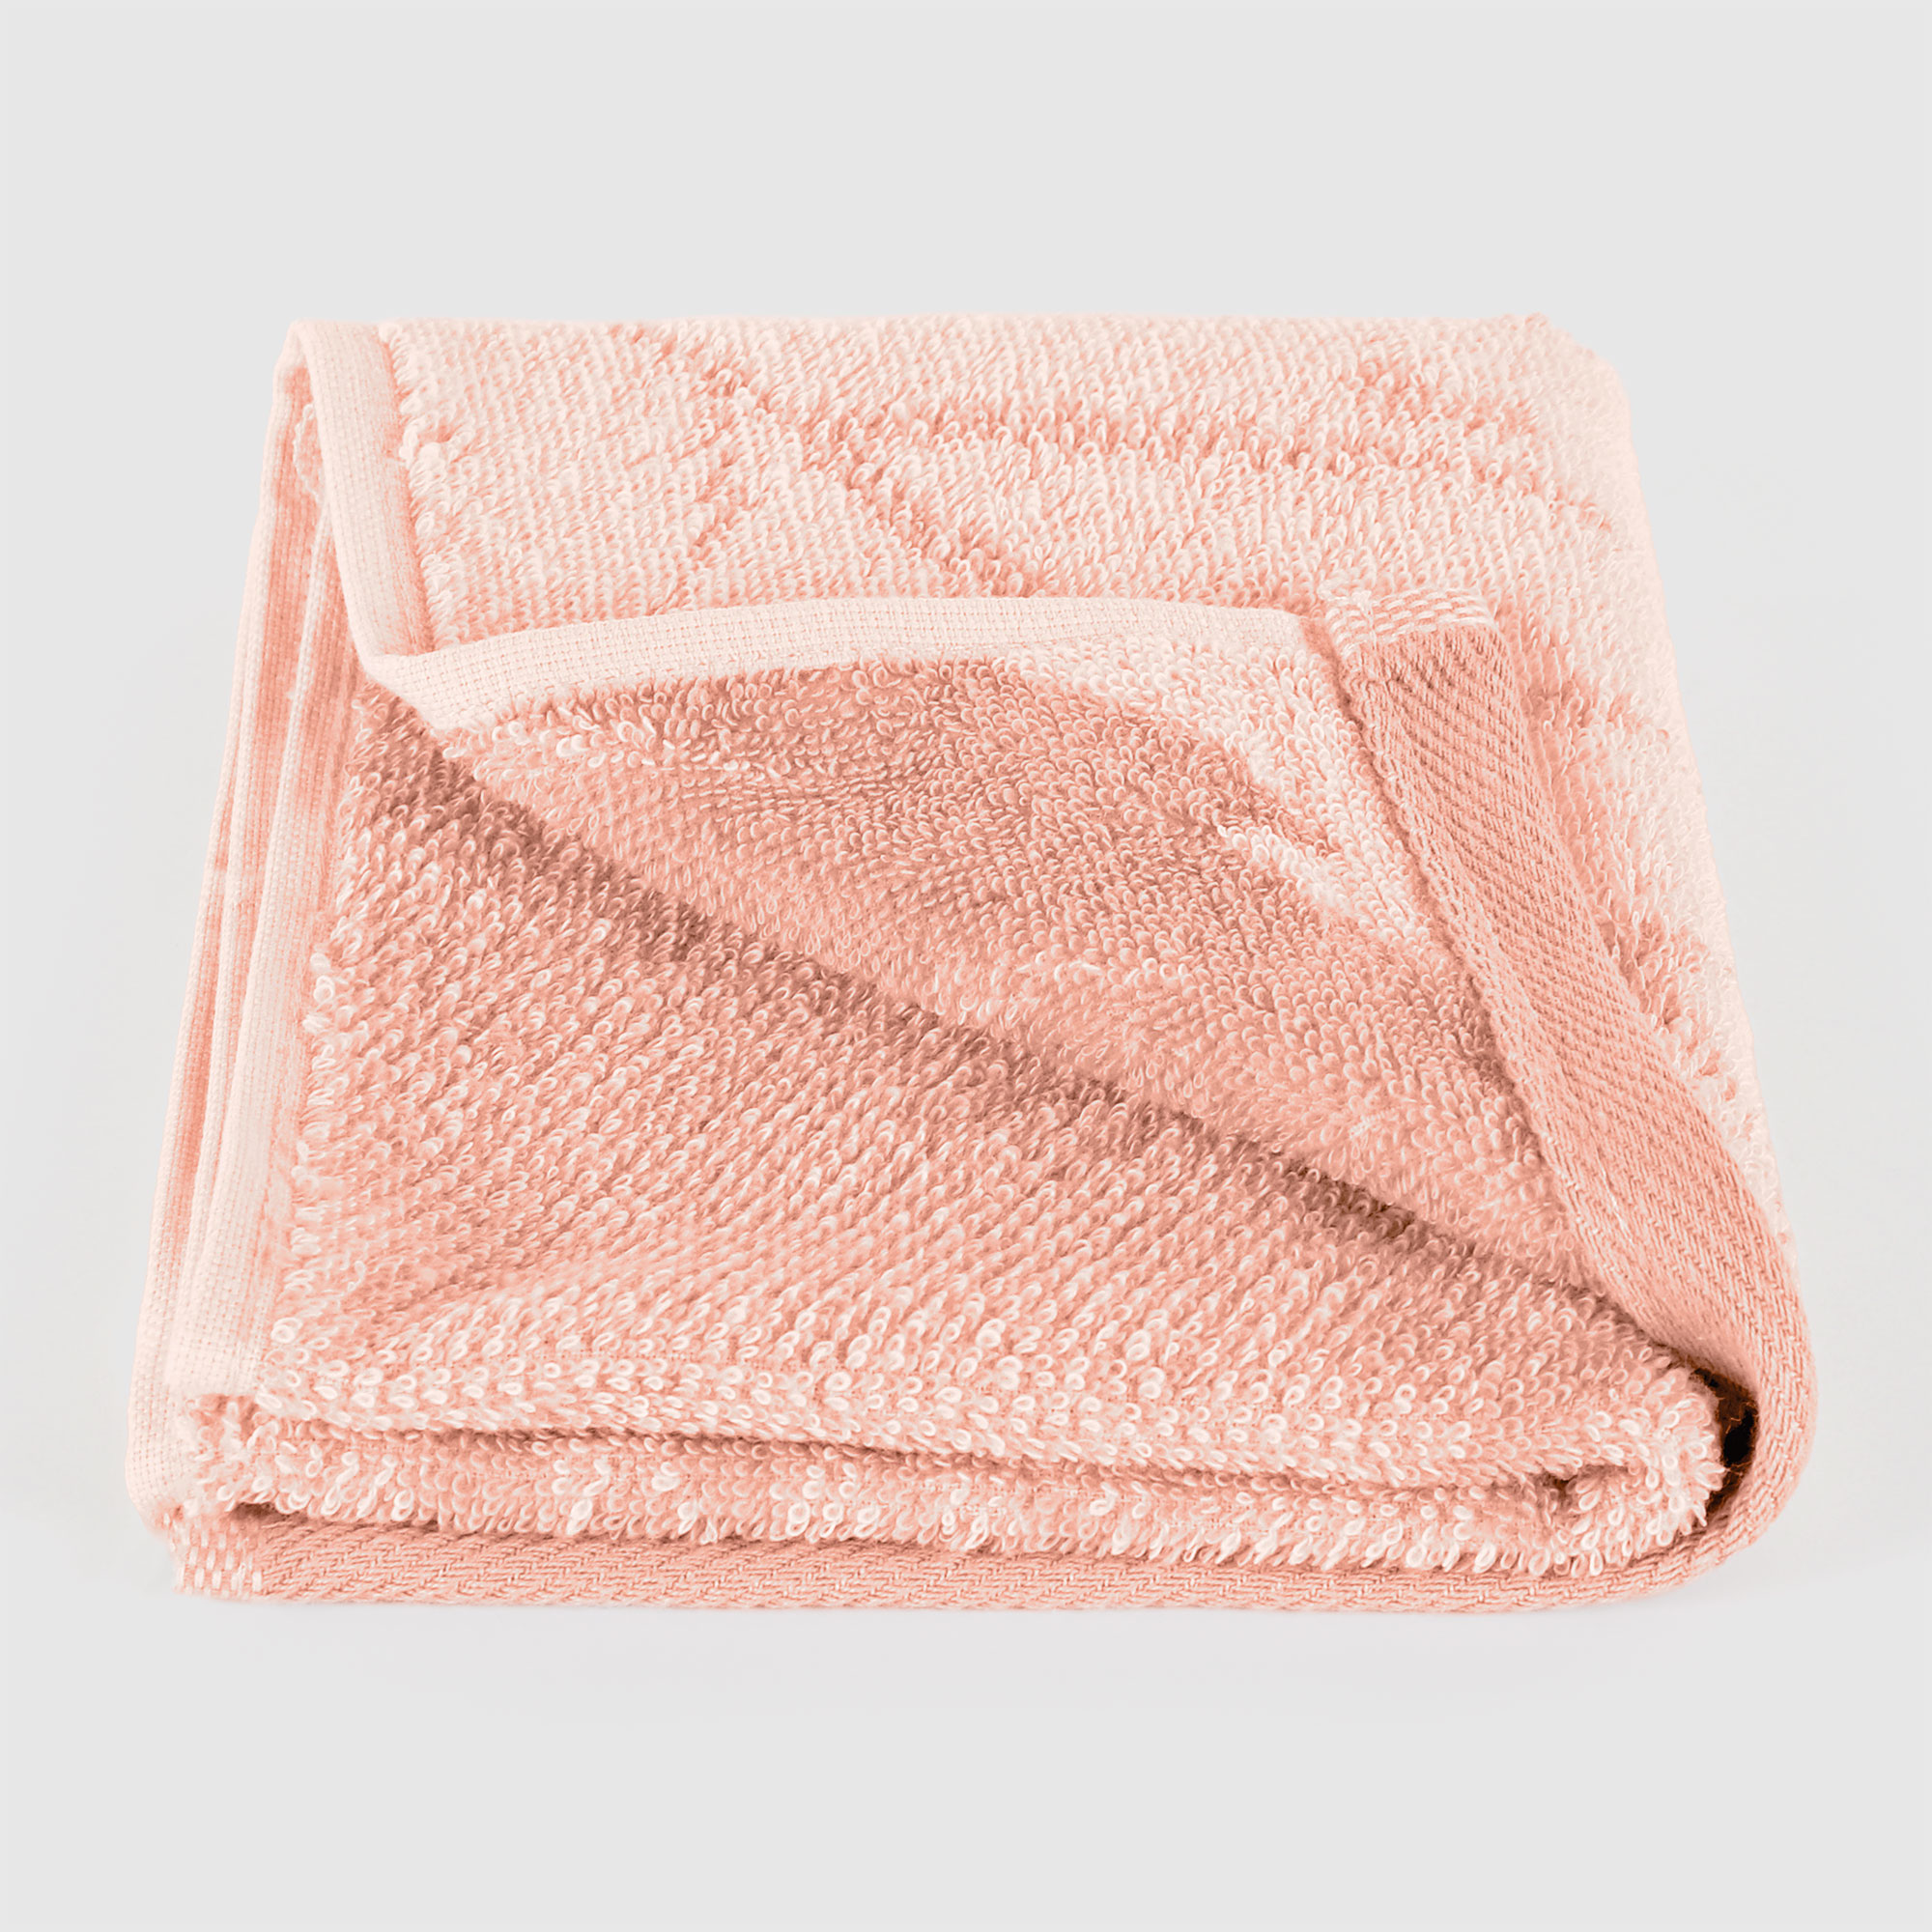 Полотенце Cleanelly Autumn Forest розовое с белым 30х50 см полотенце cleanelly biscottom бирюзовое 30х50 см